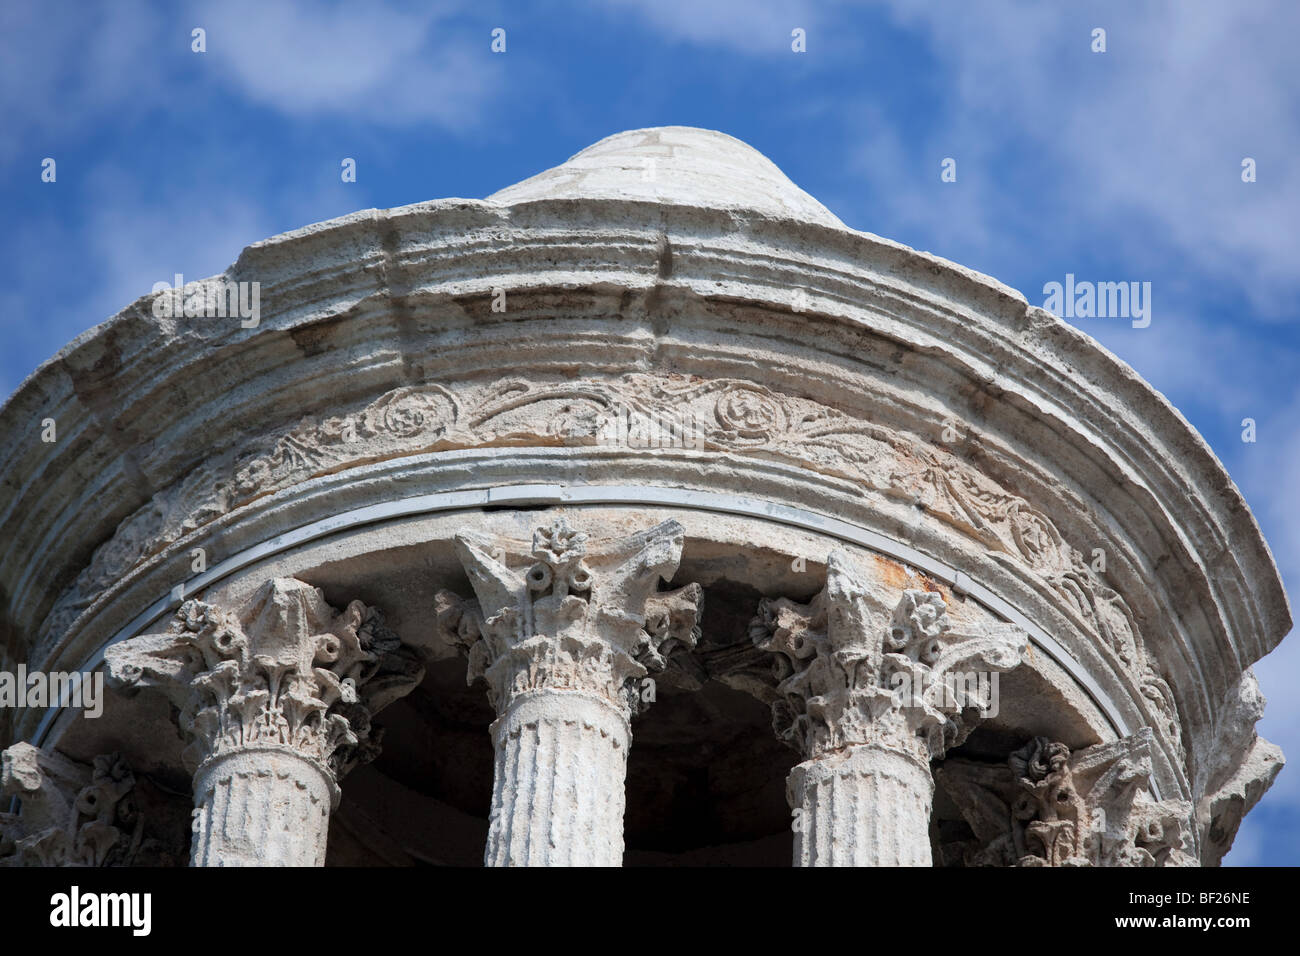 Frankreich, Glanum, Mausoleum, die Spitze des Denkmals erinnert an ein Rundtempel oder tholos Stockfoto